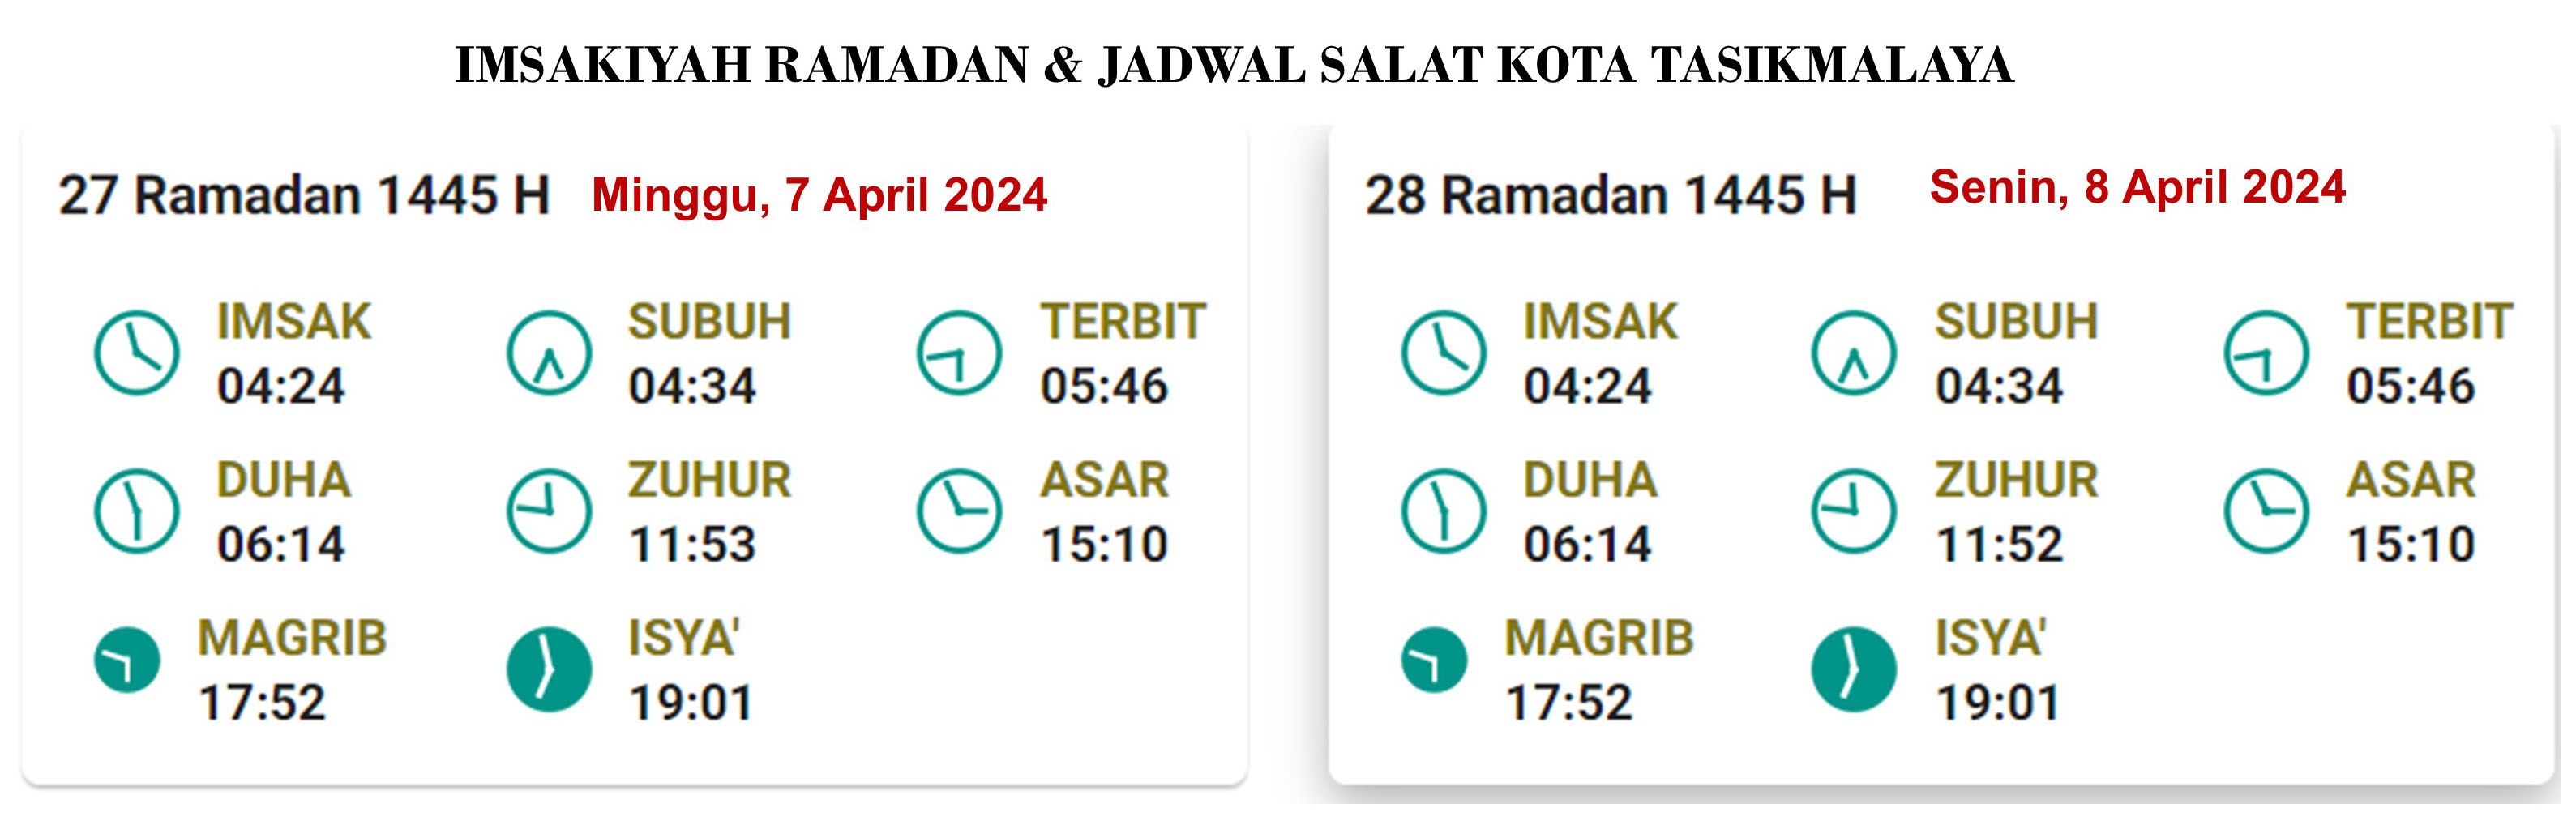 Tasikmalaya,  Jadwal Imsakiyah dan Salat, Minggu, 7 April 2024